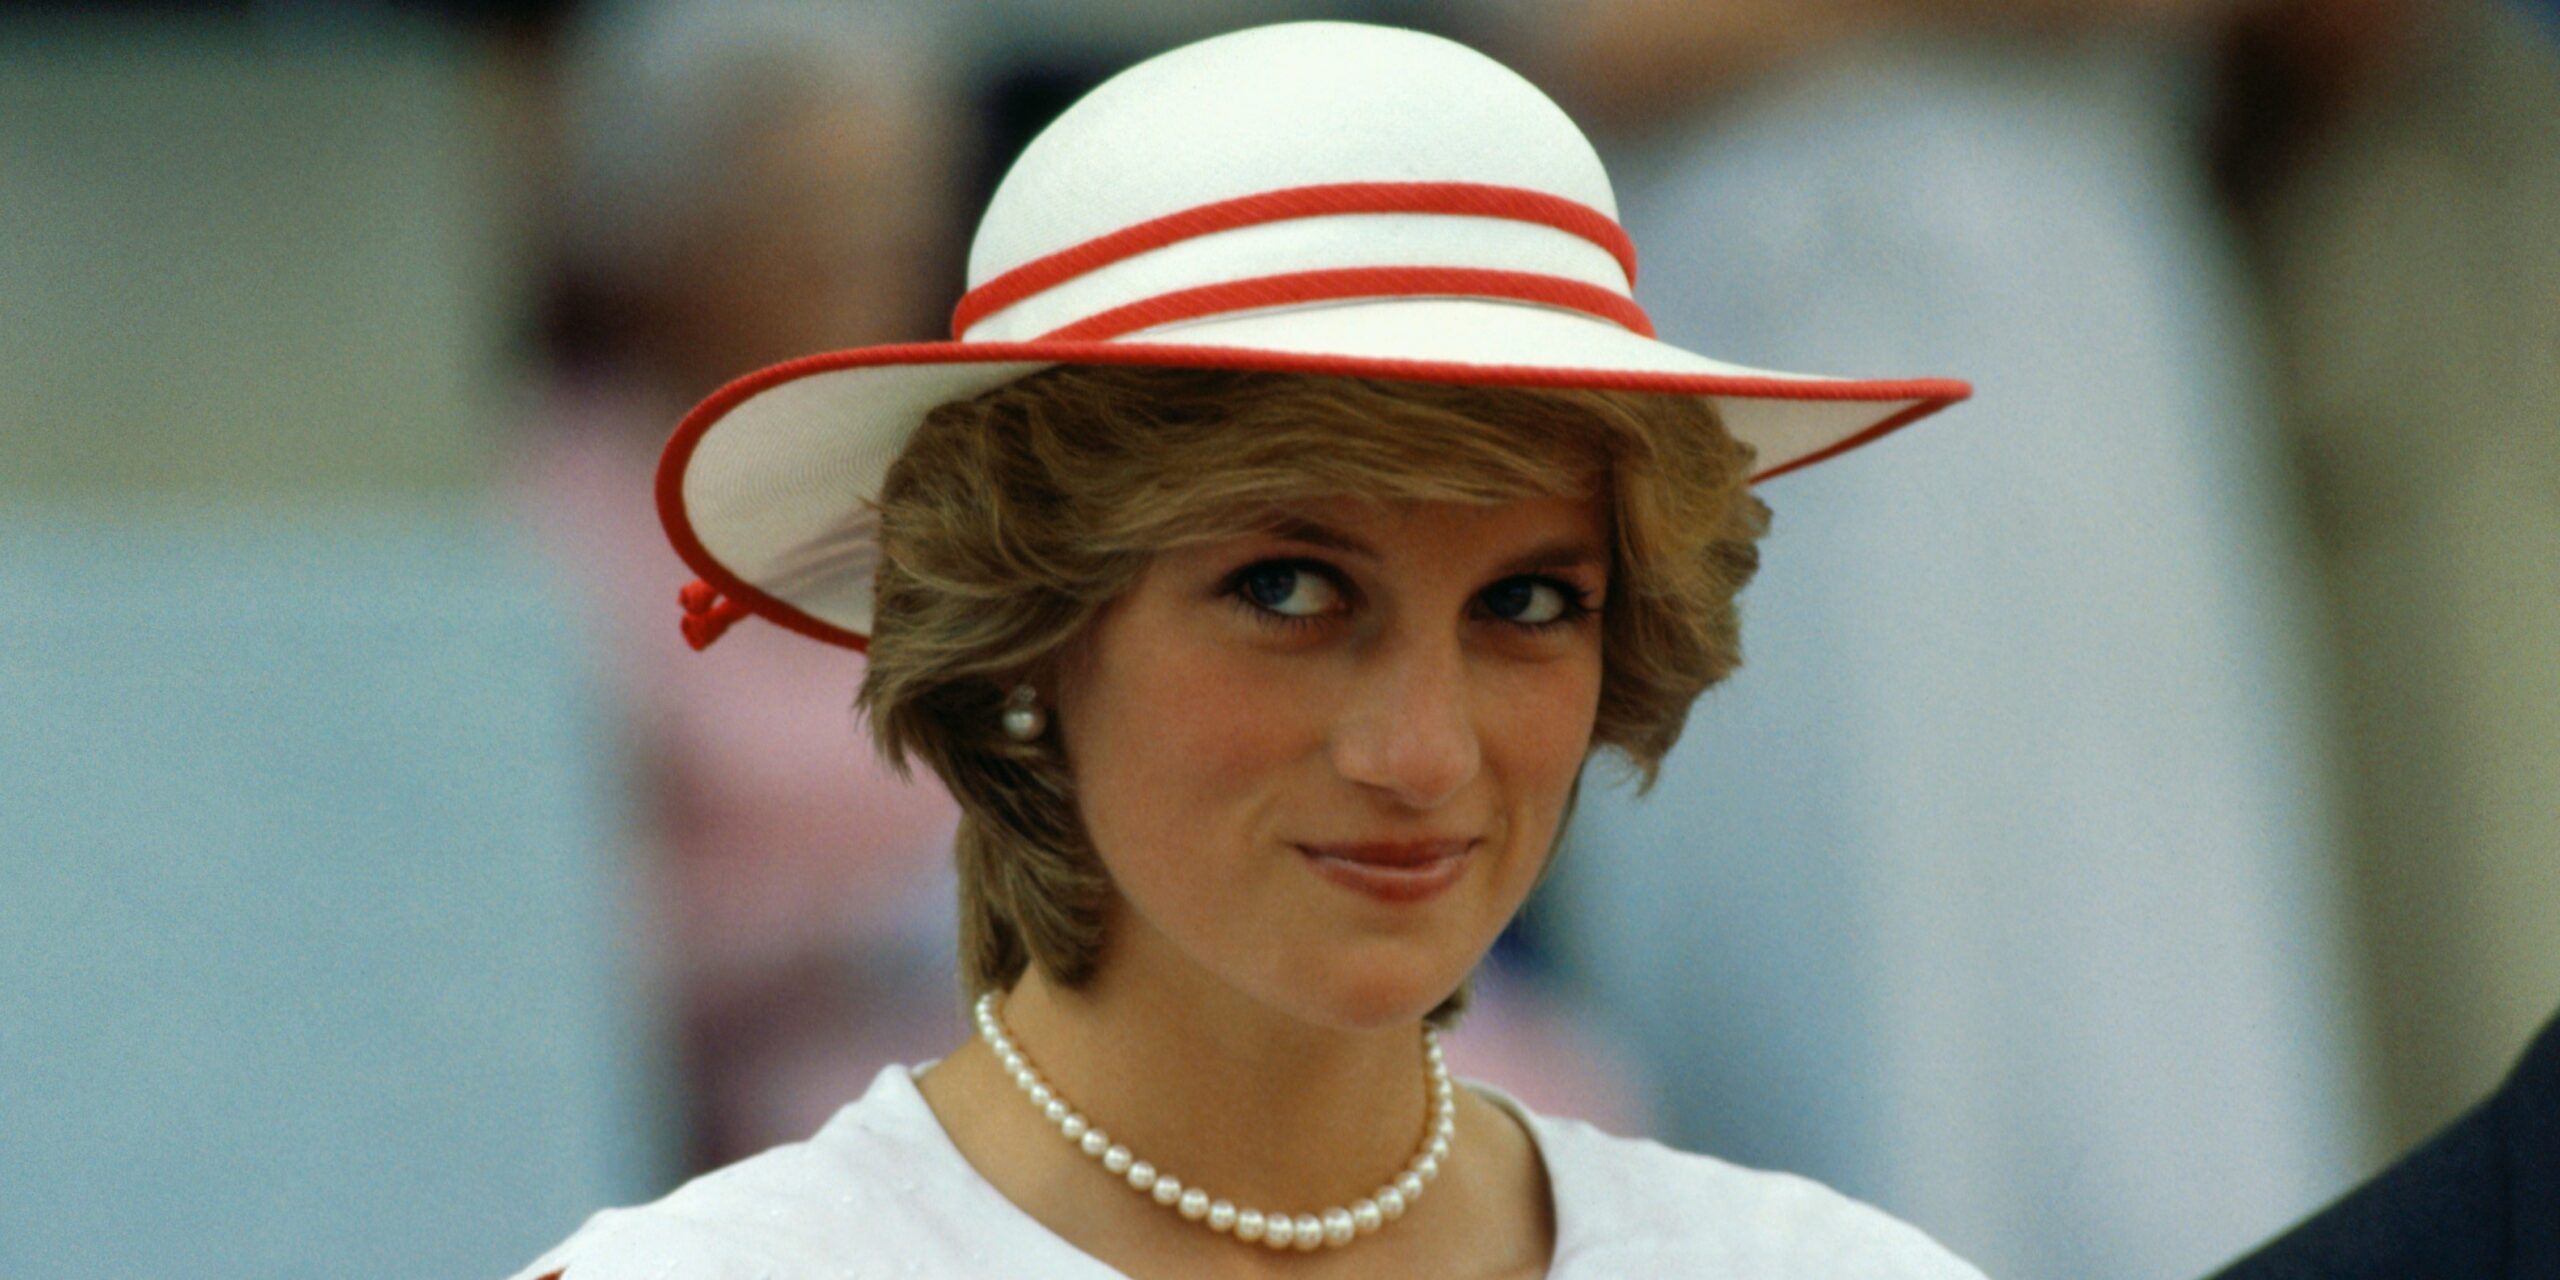 1997- Princess Diana dies